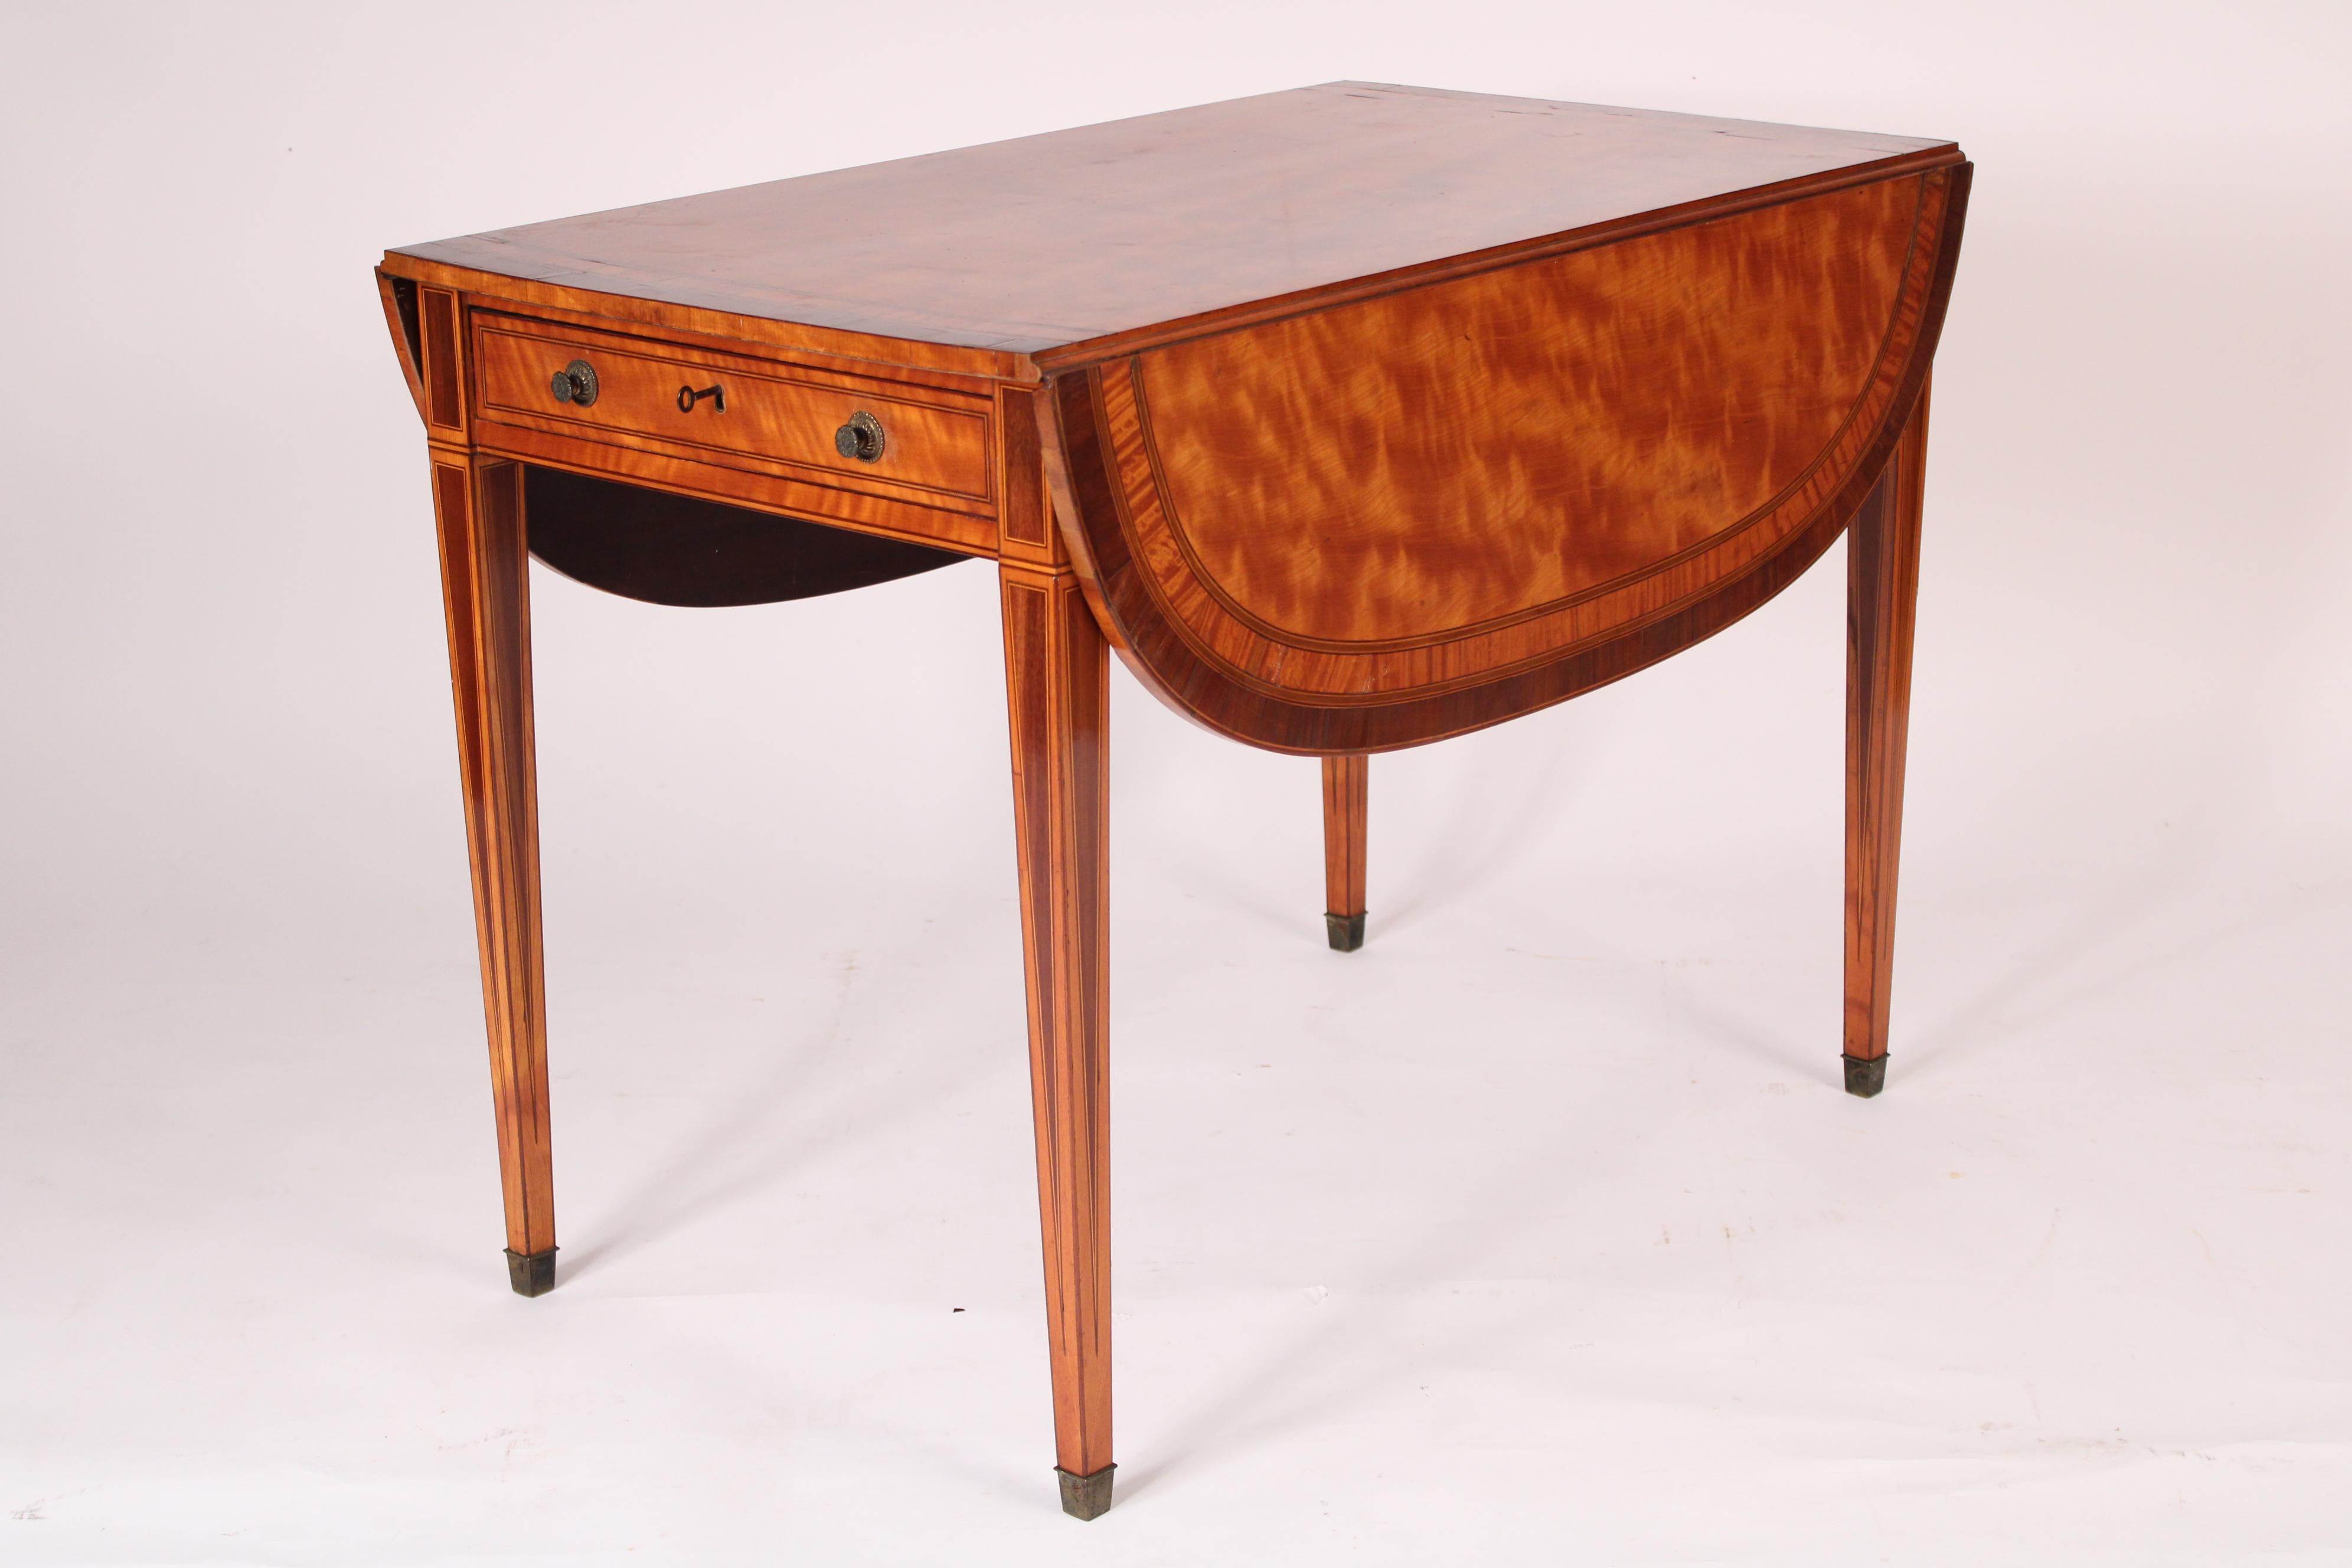 Table pembroke en bois satiné de style édouardien anglais, vers 1900. Le plateau rectangulaire en bois satiné est orné de bandes transversales et d'un cordon en acajou. Deux feuilles tombantes en forme de D, un tiroir en frise avec deux boutons en